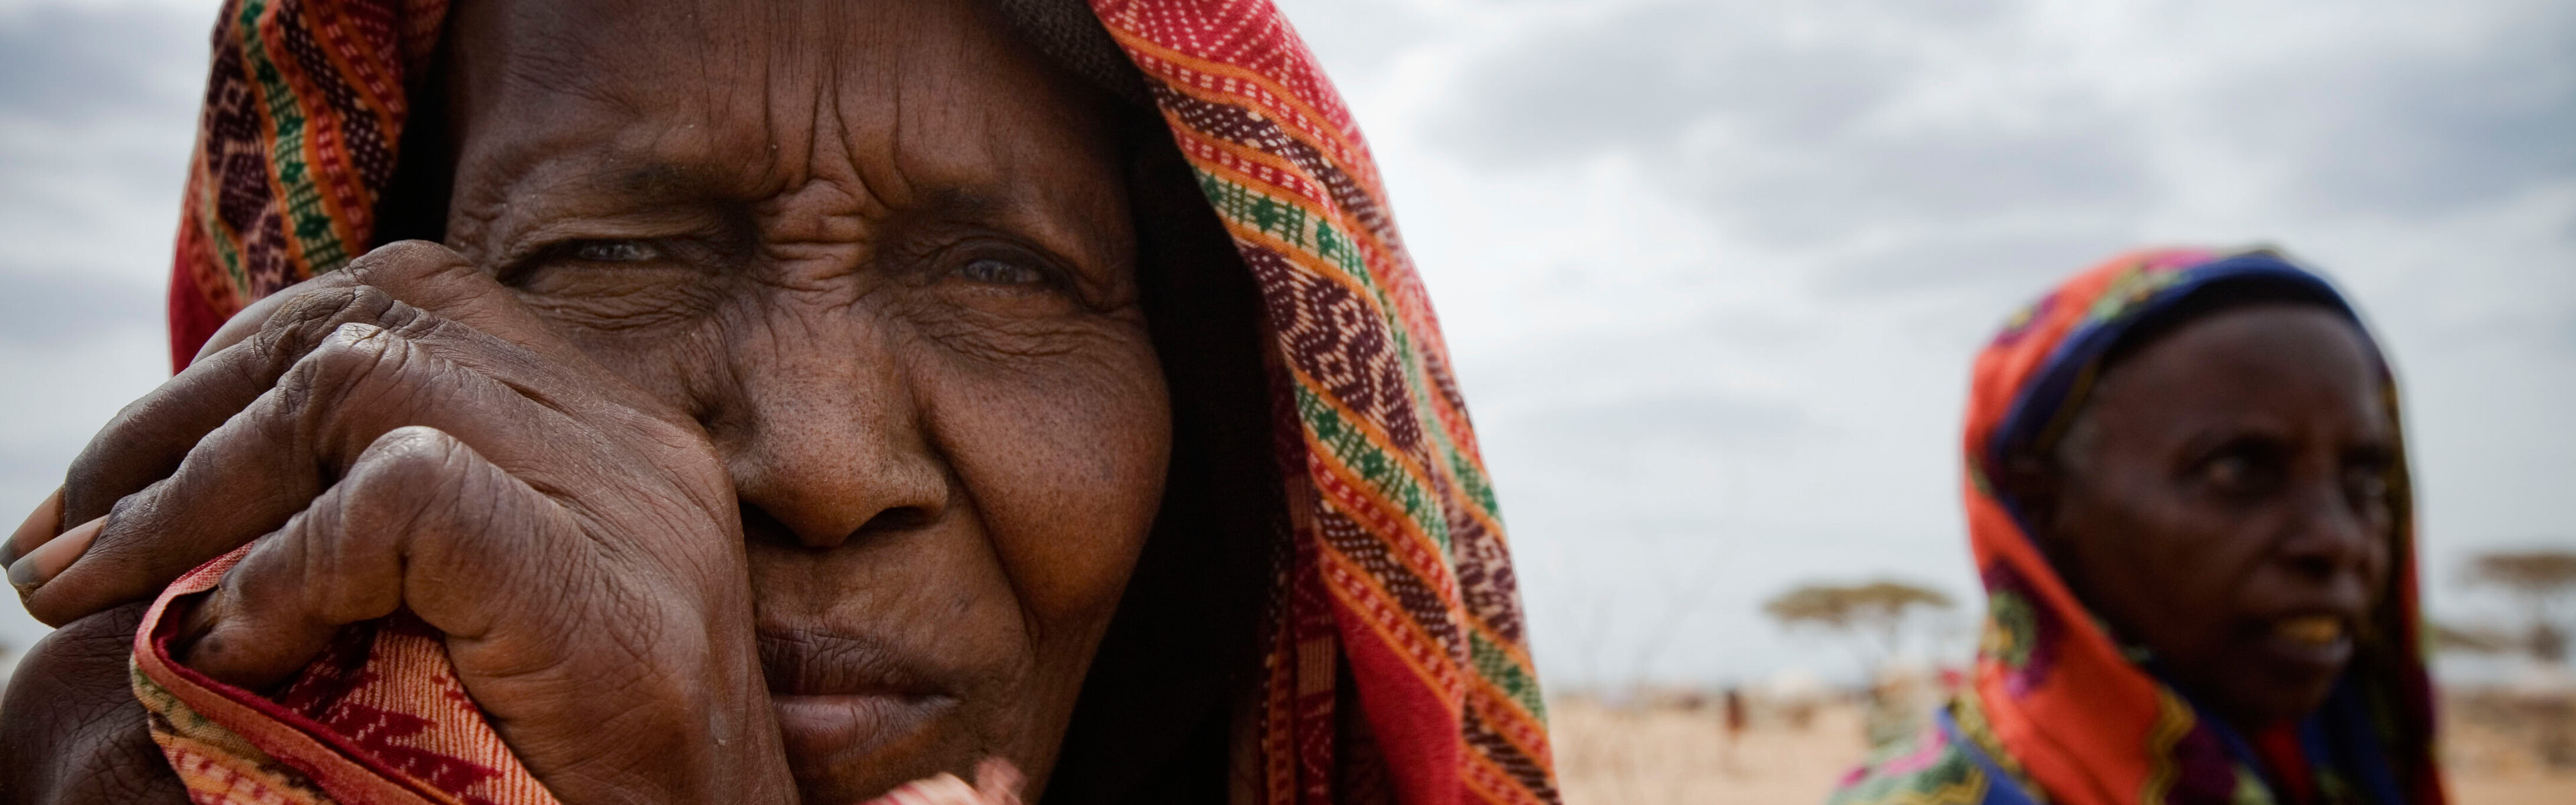 Klimaphänomen El Niño führt in vielen Regionen zu Dürre. Auch diese beiden Frauen leiden unter der extremen Trockenheit.